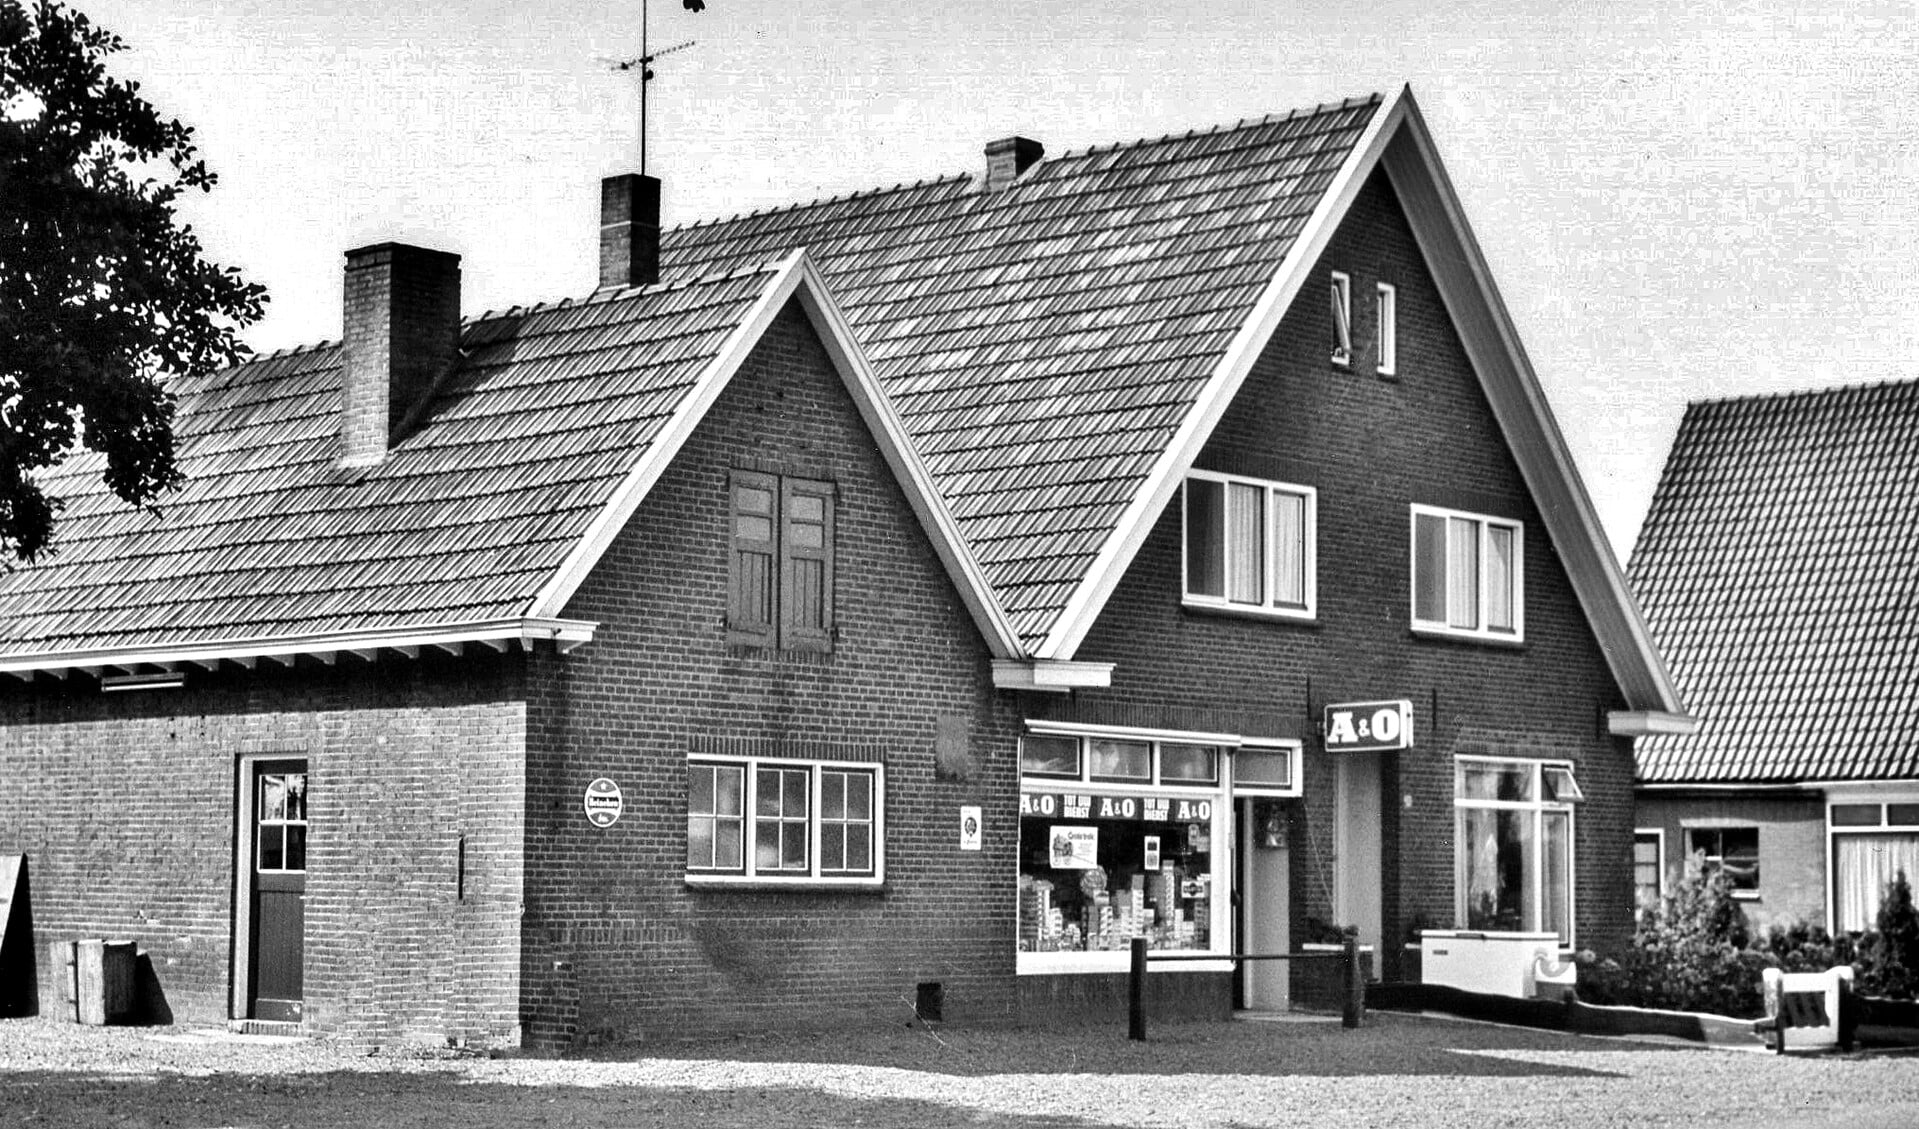 Buurtwinkel Gussinklo aan de Veenweg in Heelweg. Foto: collectie Gerard Bruil